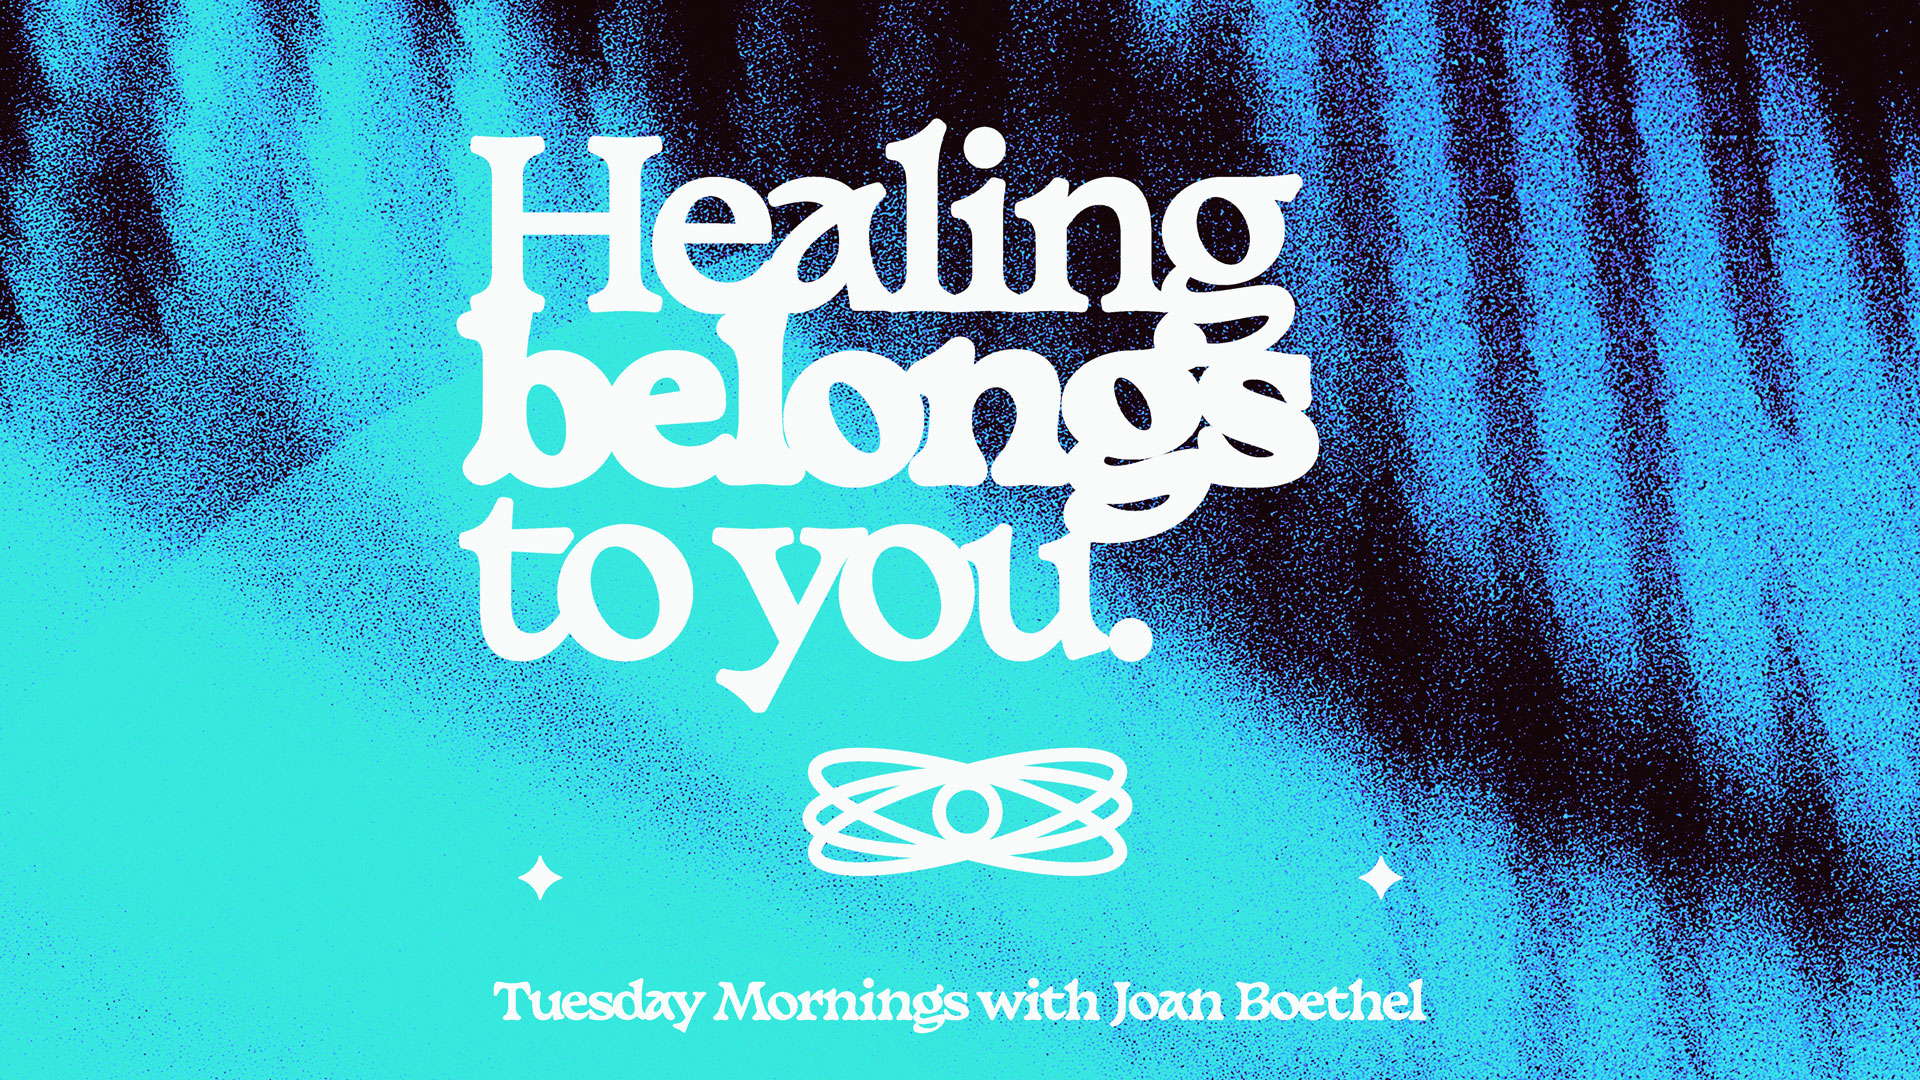 Healing Belongs to You